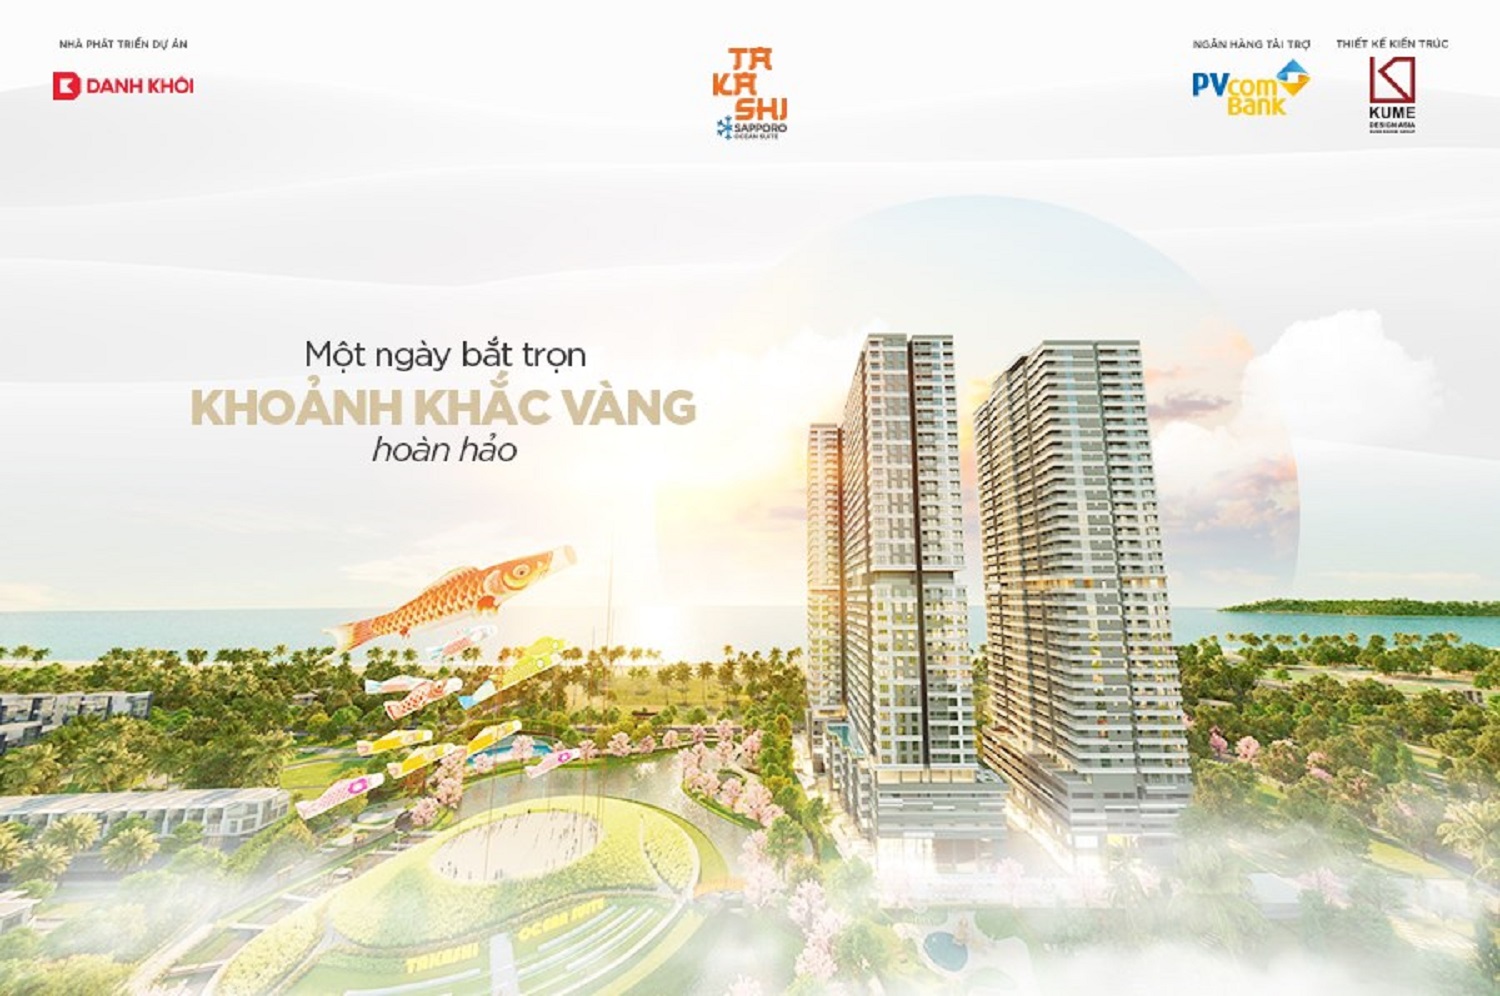 Cơ hội đầu tư bất động sản biển phố Quy Nhơn Bình Định | bat dong san pho bien quy nhon 1